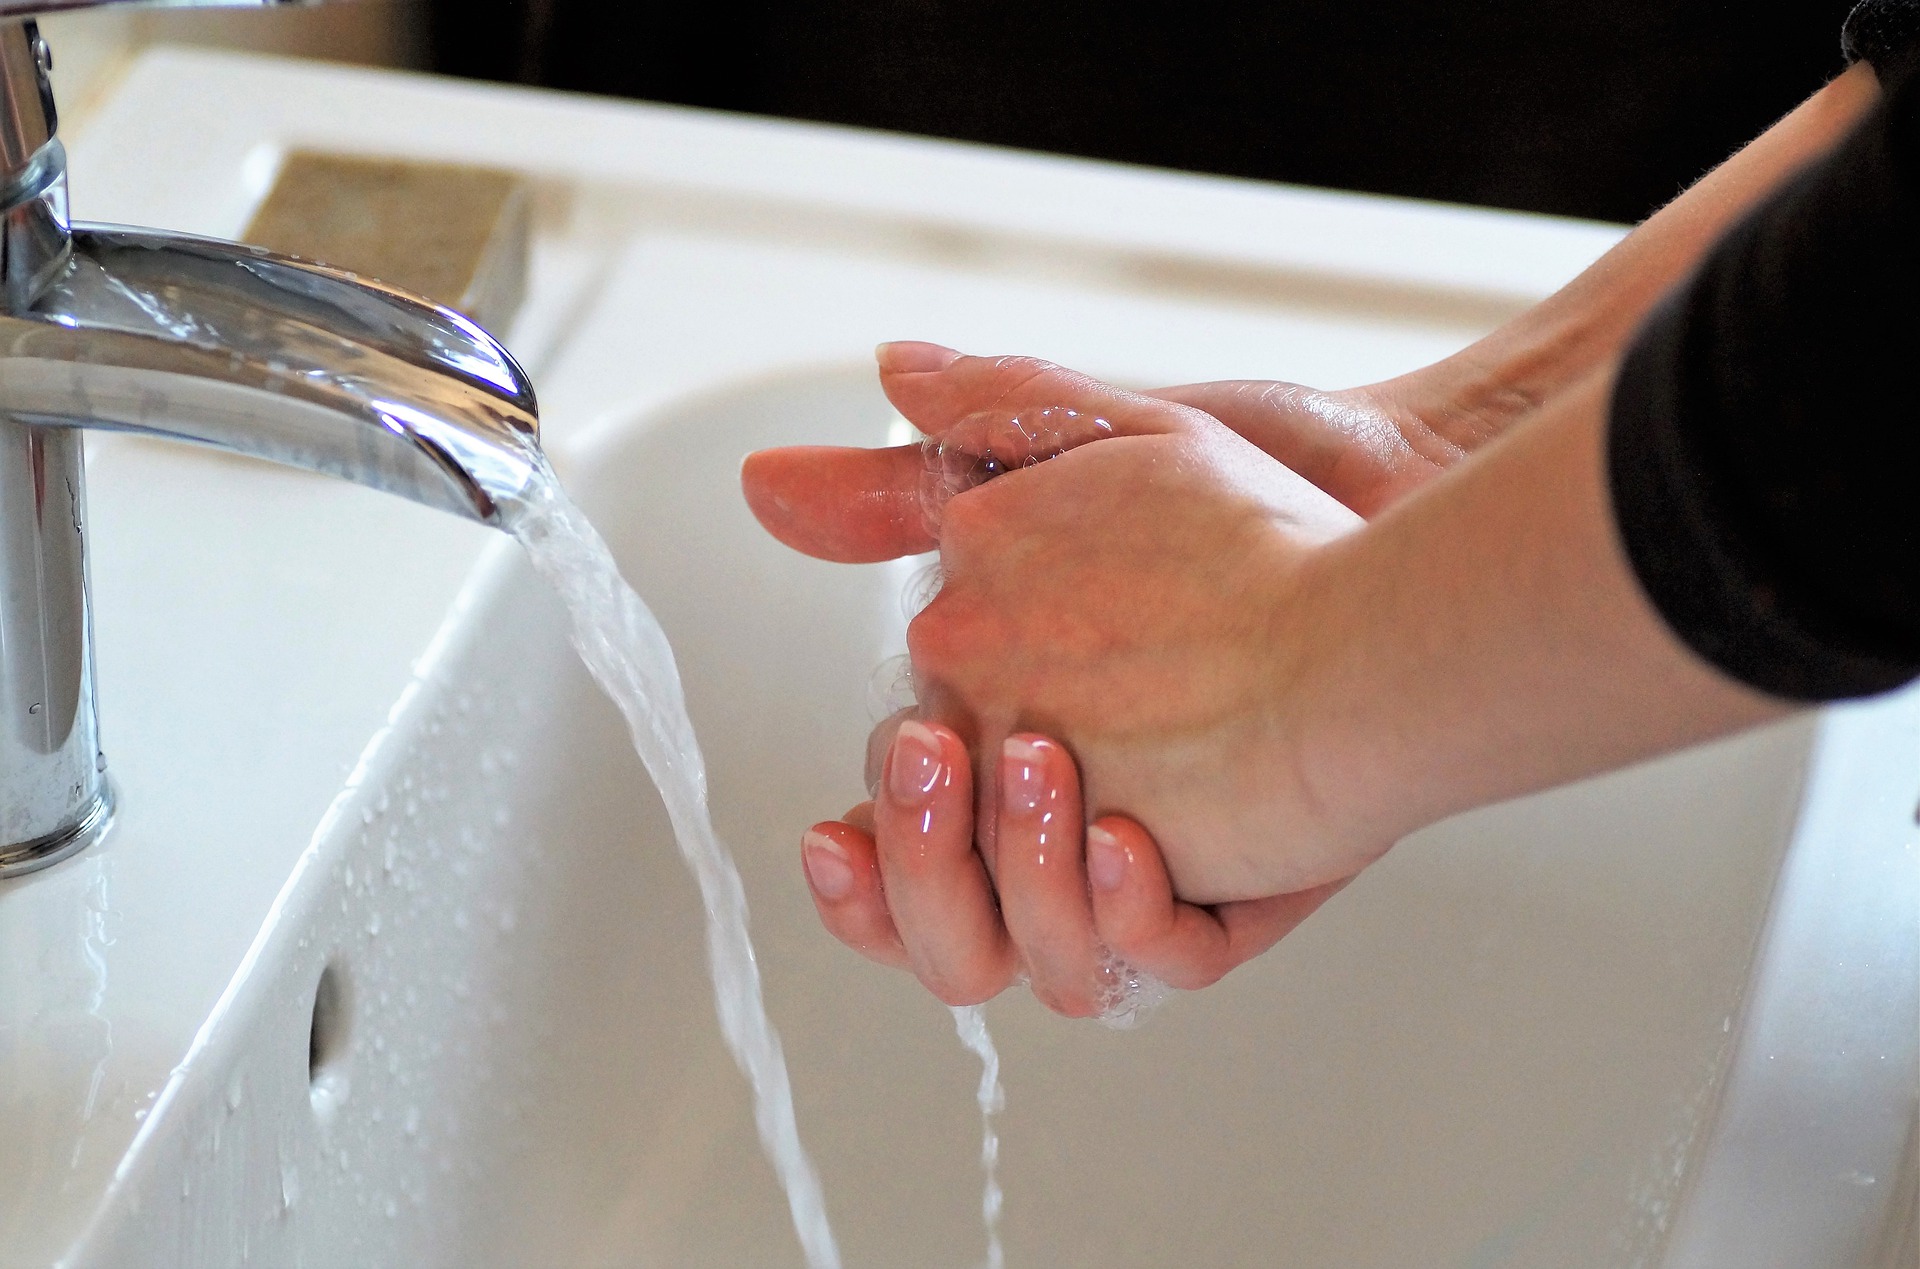 Горячая вода в школе. Мытье рук. Мыть руки. Мытье рук с мылом и водой применяется для. Женщина моет руки.